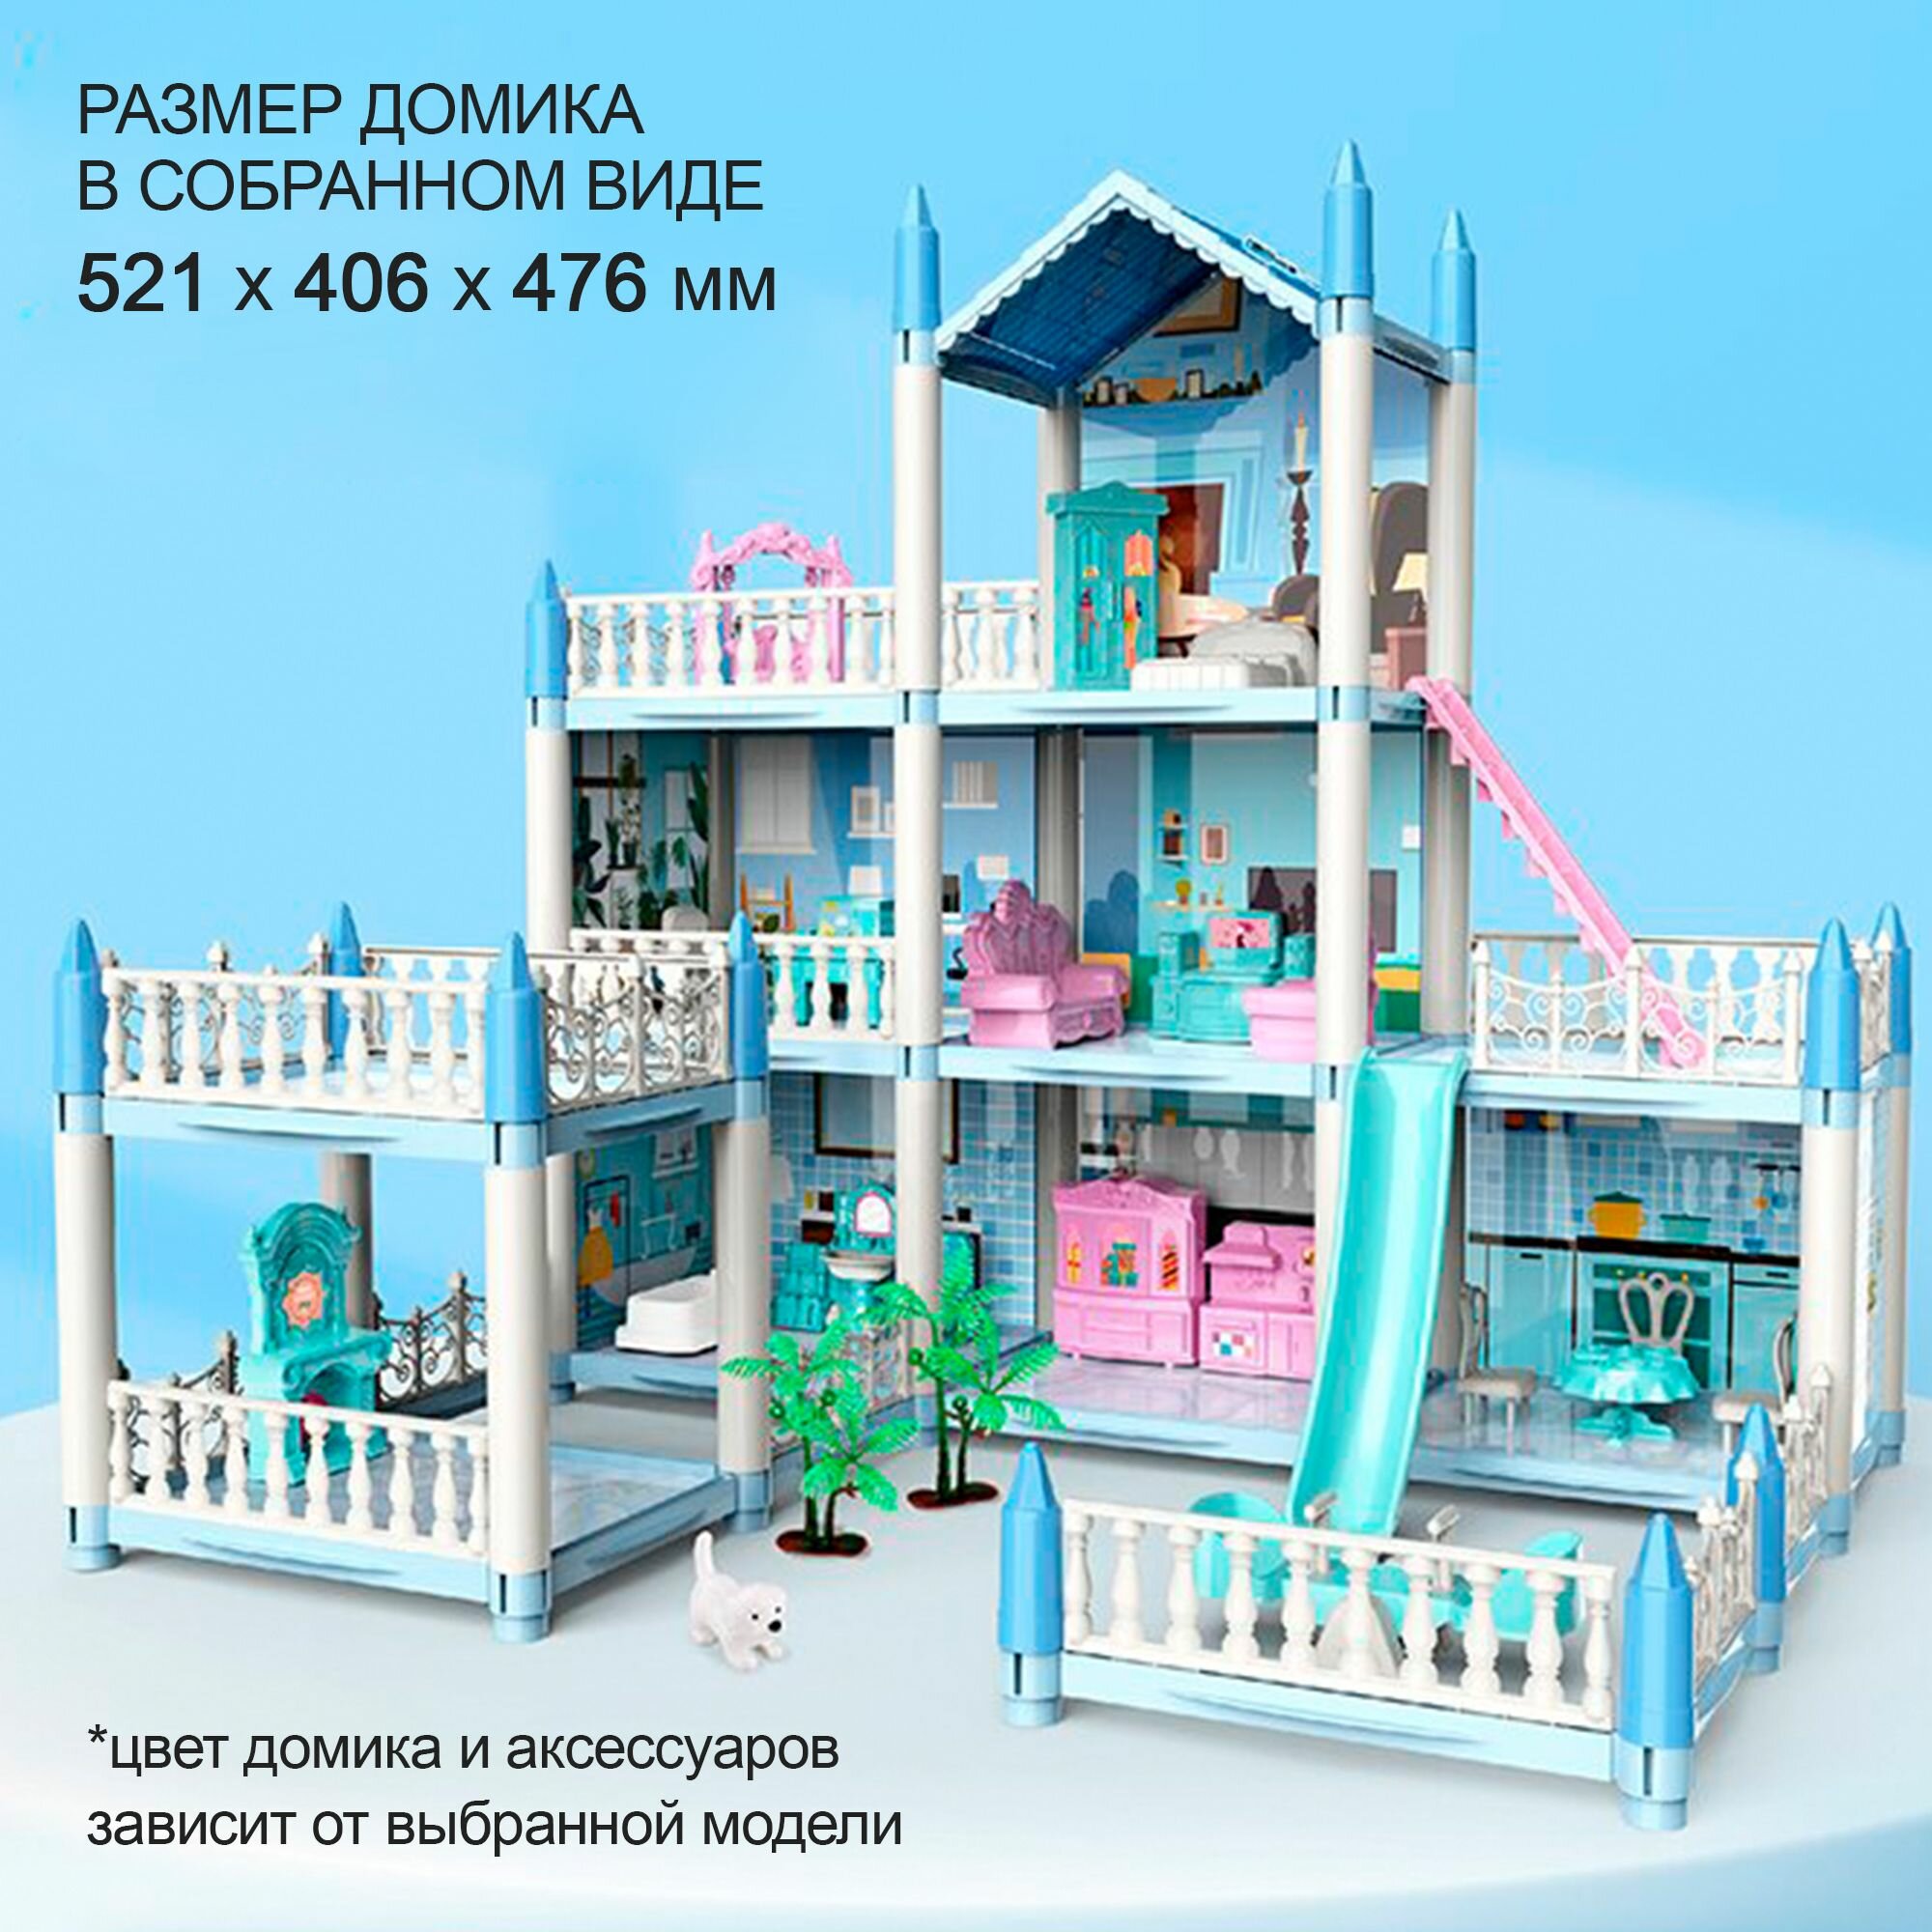 Кукольный домик с мебелью и куклами, игрушечный дом для кукол состоит из 3х этажей и 7 комнат